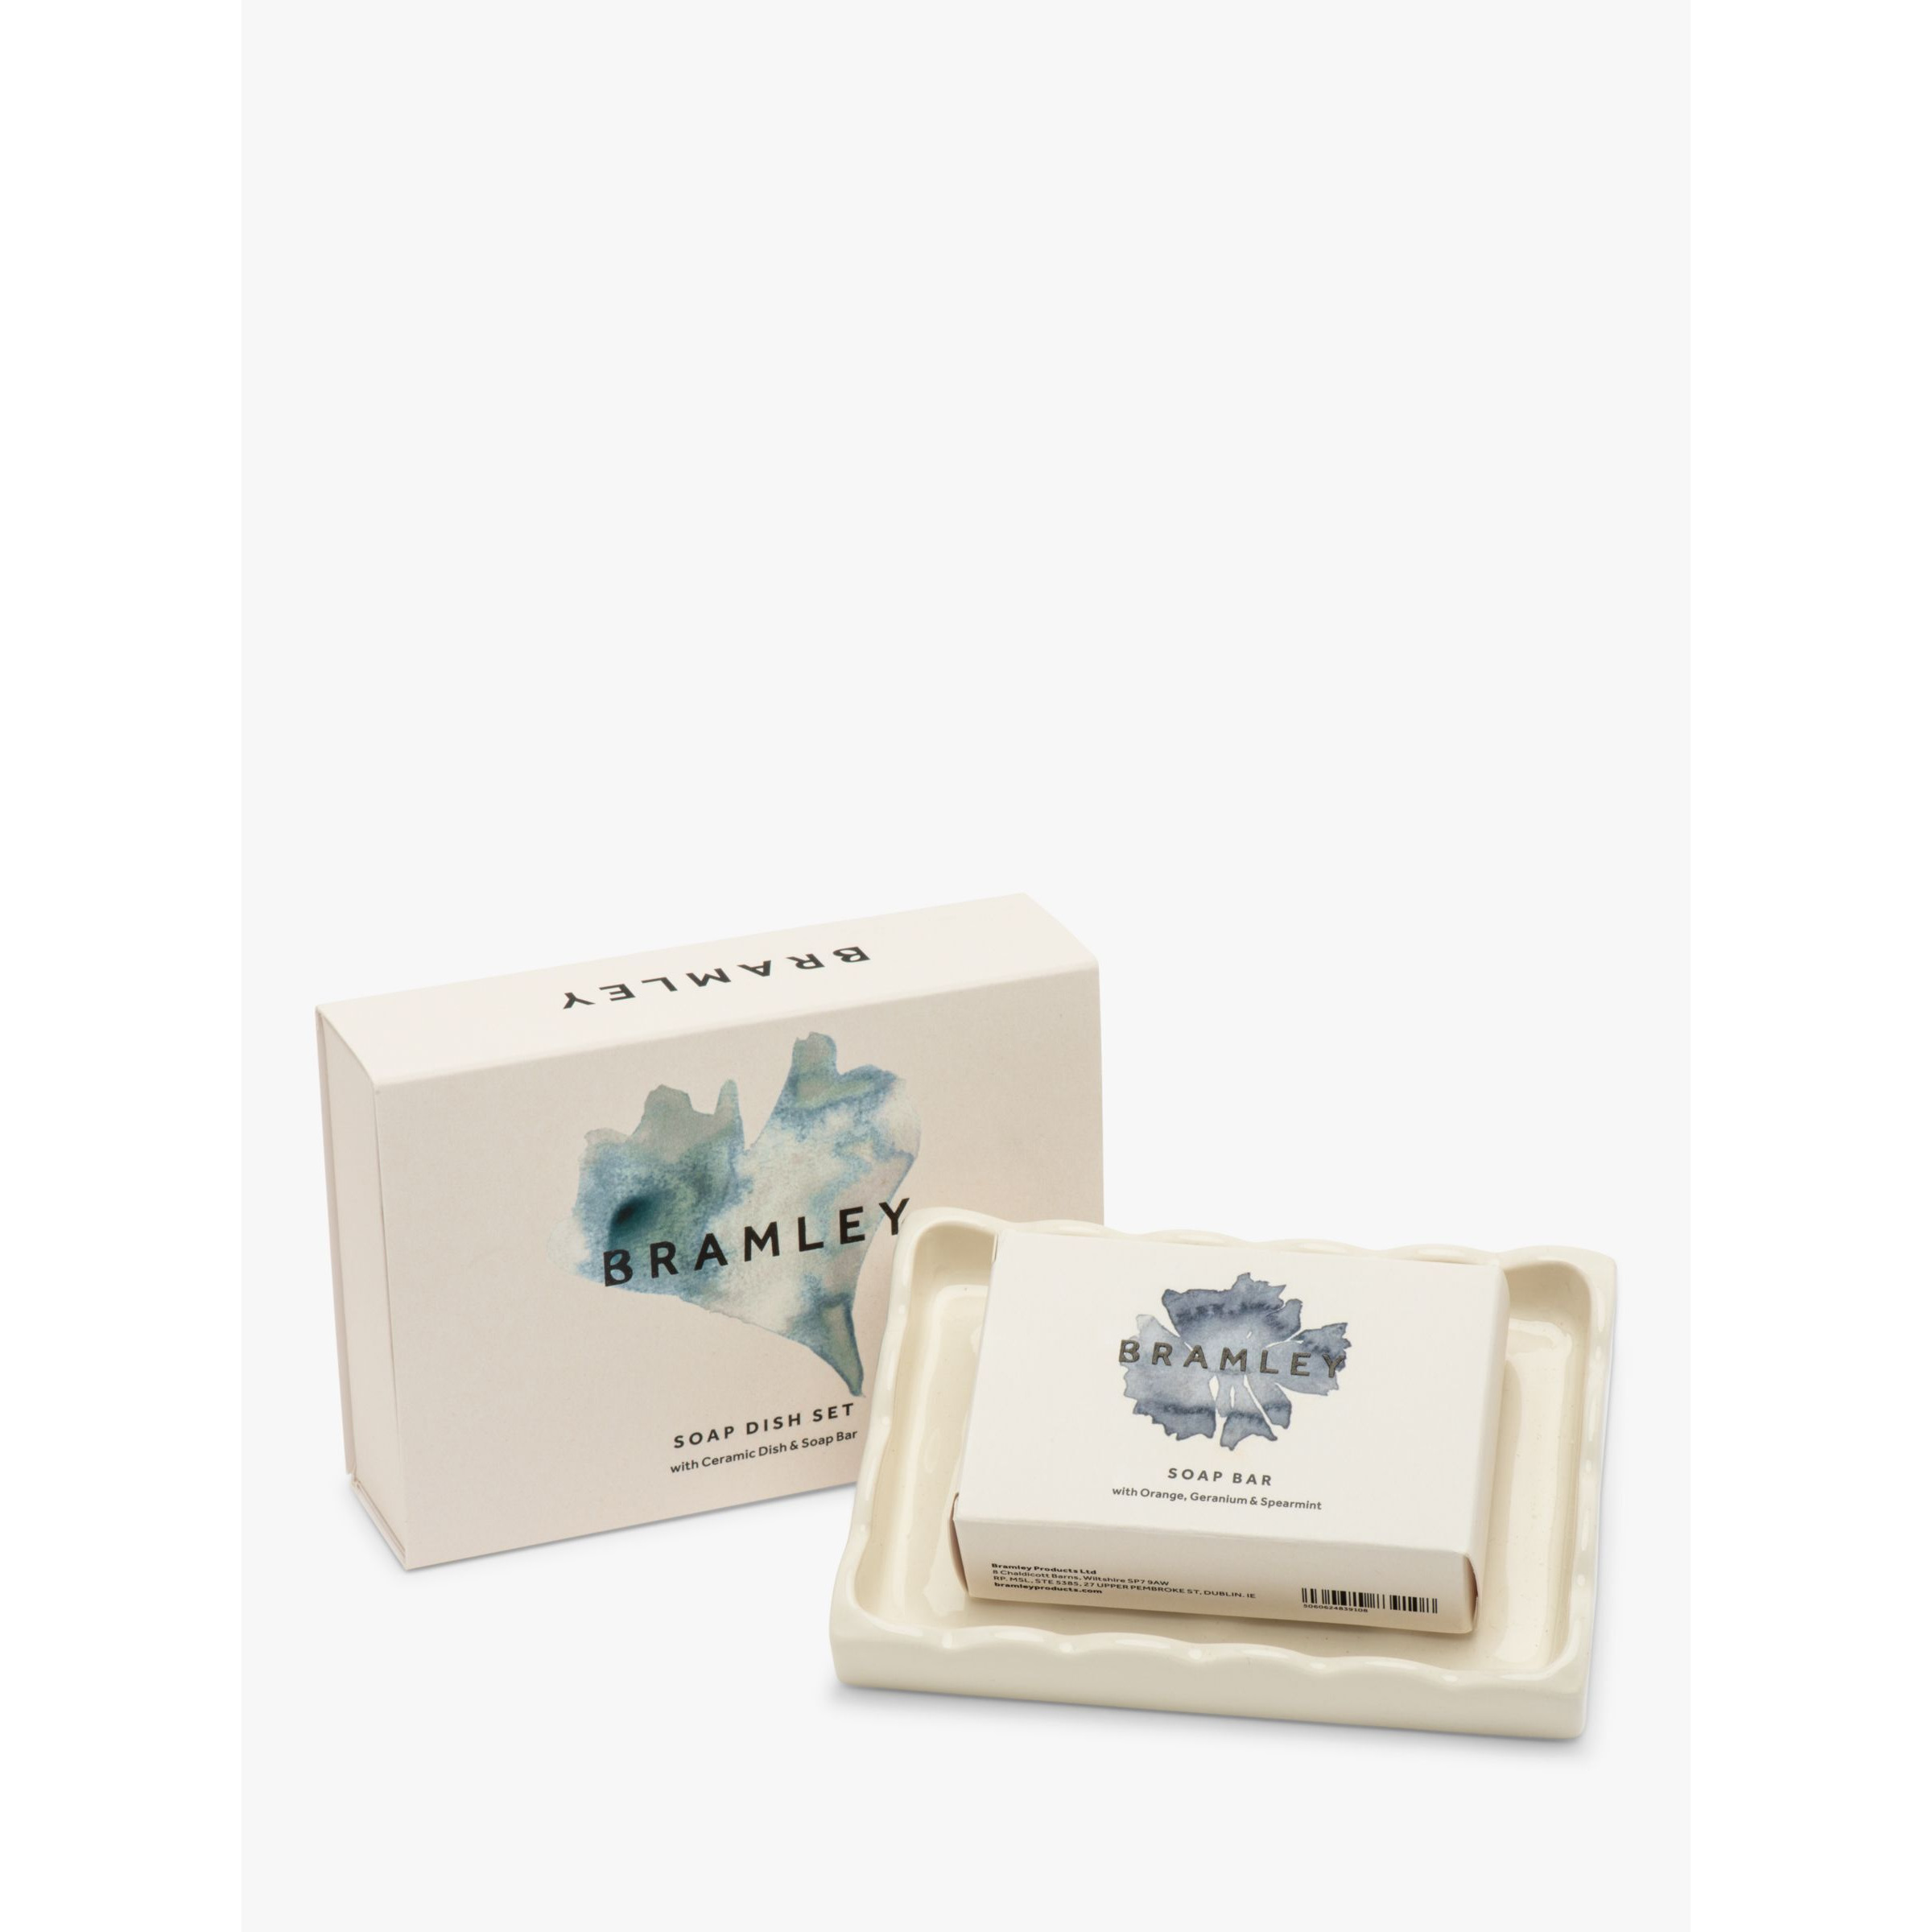 Bramley Soap & Ceramic Soap Dish Set, 100g - image 1